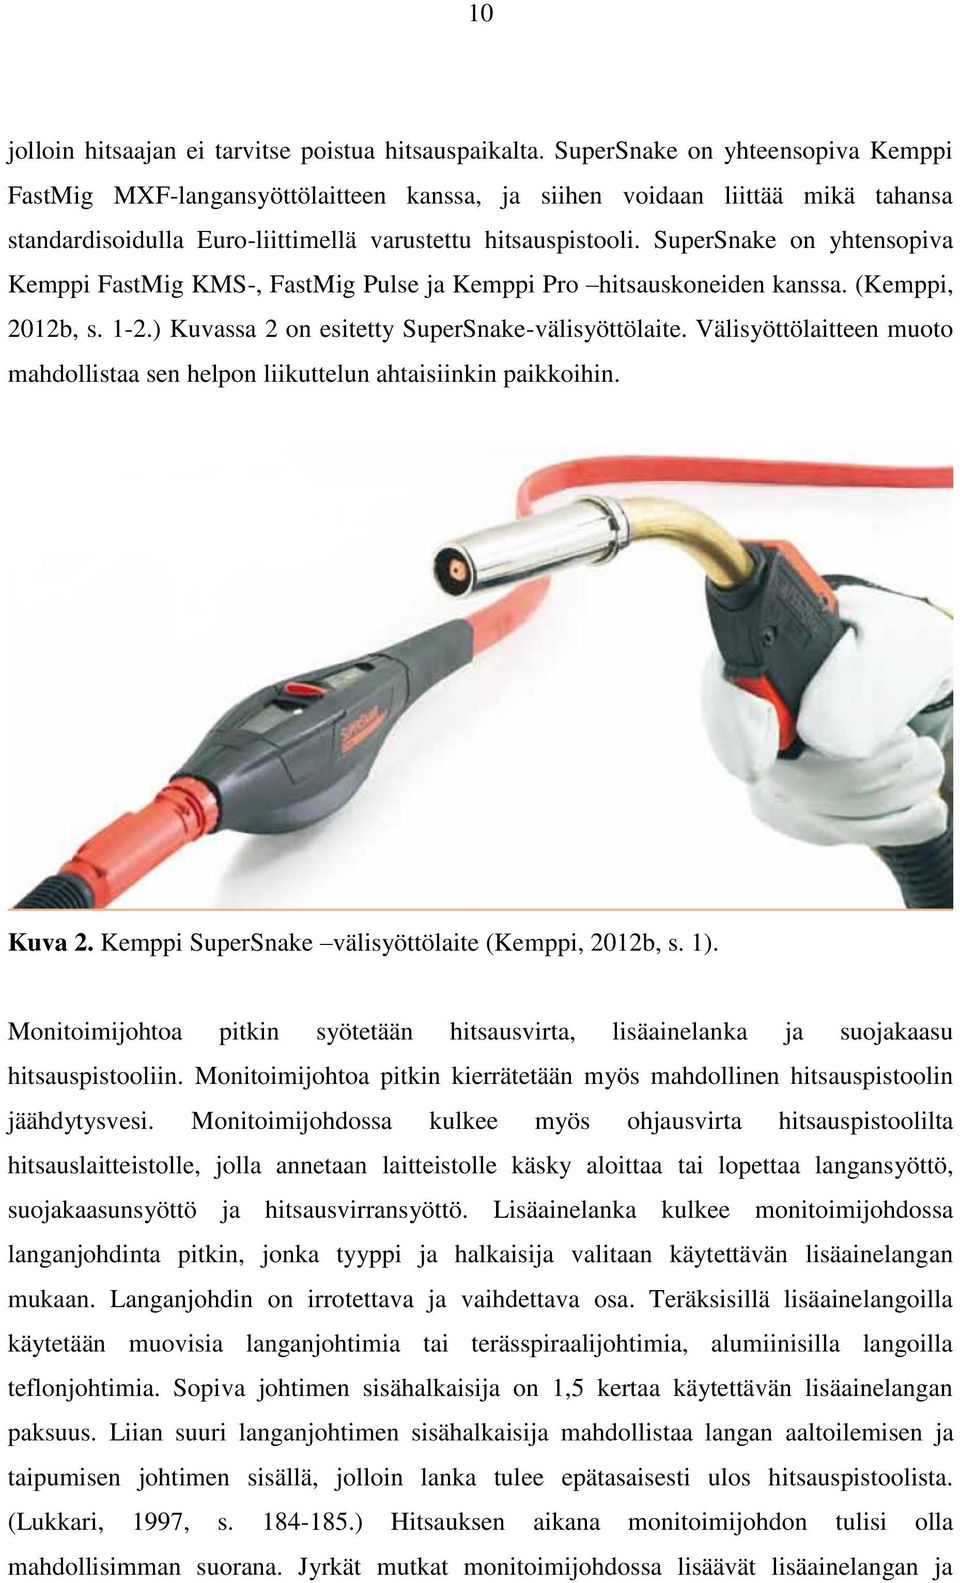 SuperSnake on yhtensopiva Kemppi FastMig KMS-, FastMig Pulse ja Kemppi Pro hitsauskoneiden kanssa. (Kemppi, 2012b, s. 1-2.) Kuvassa 2 on esitetty SuperSnake-välisyöttölaite.